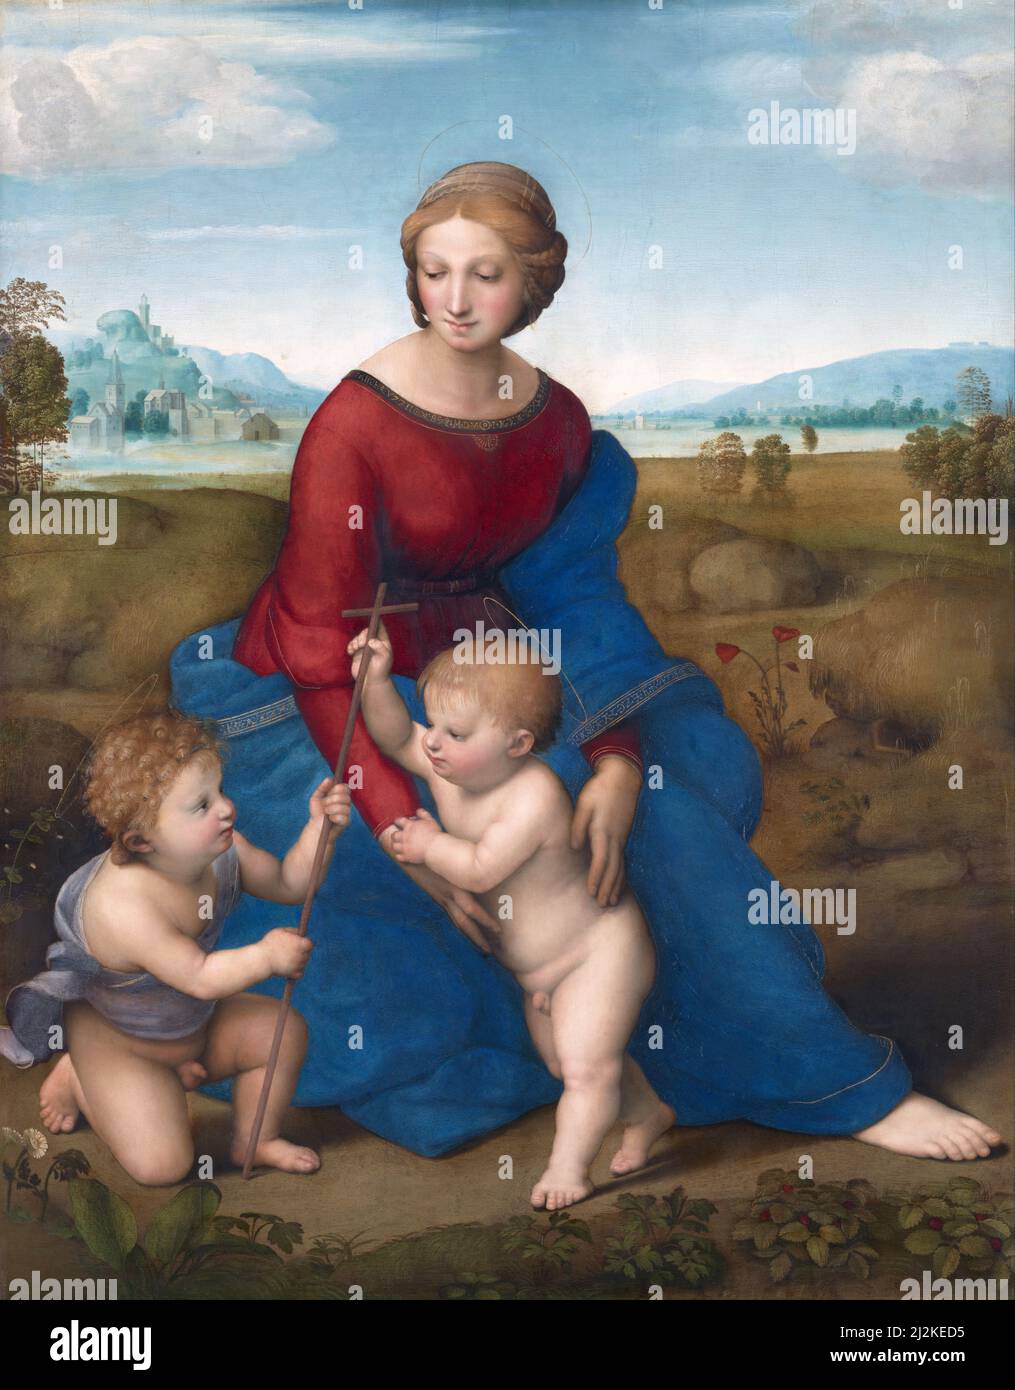 Antike Kunst des italienischen Künstlers Raphael - die Sixtinische Madonna (zwischen 1512 und 1513). Kunst der Hochrenaissance von Rafaello Sanzio da Urbino. Stockfoto